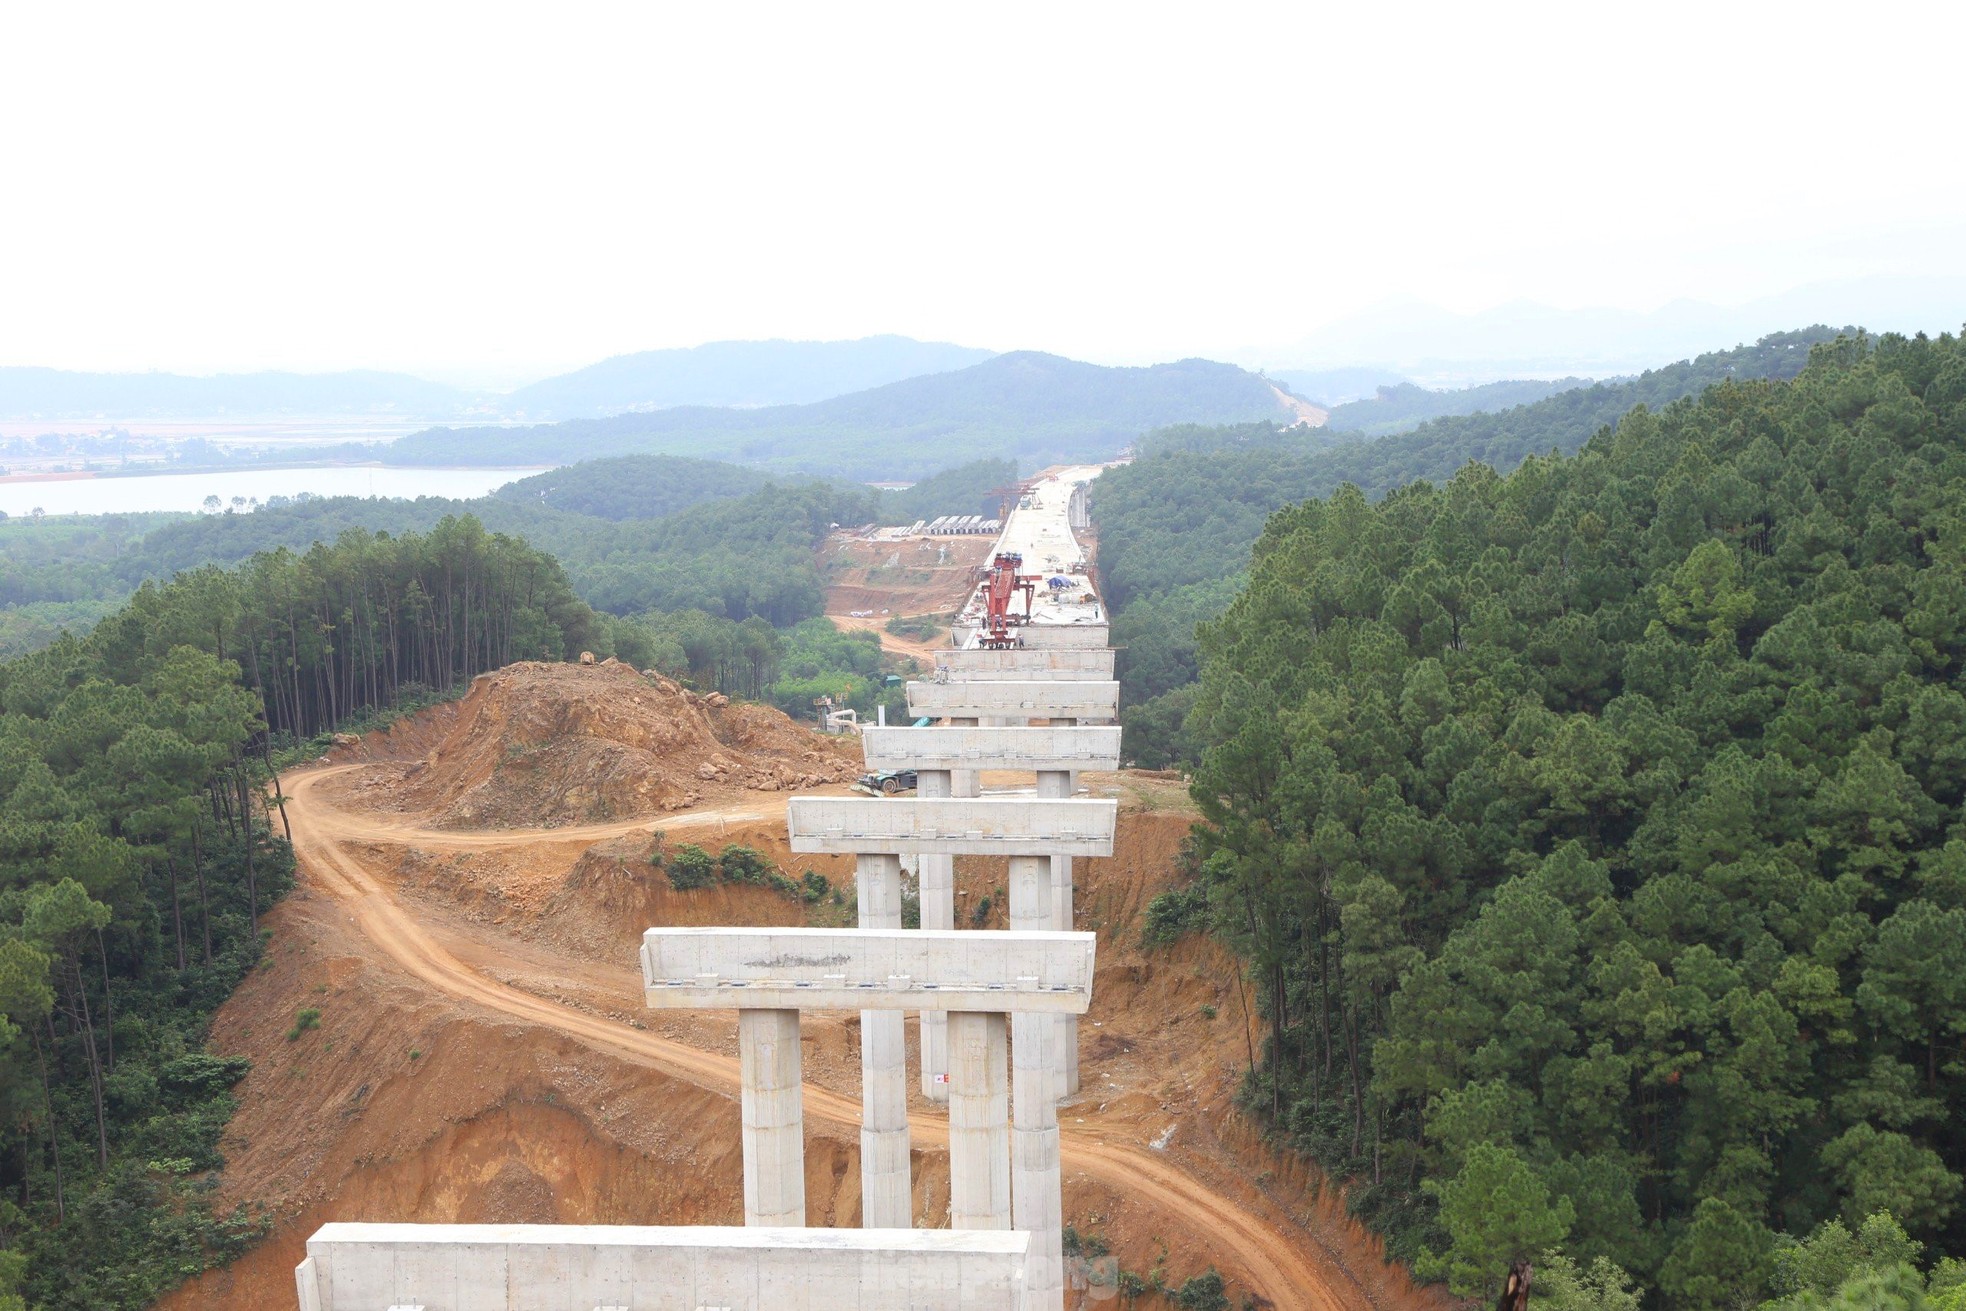 Cận cảnh những cây cầu vượt núi trên cao tốc Diễn Châu - Bãi Vọt - Ảnh 11.